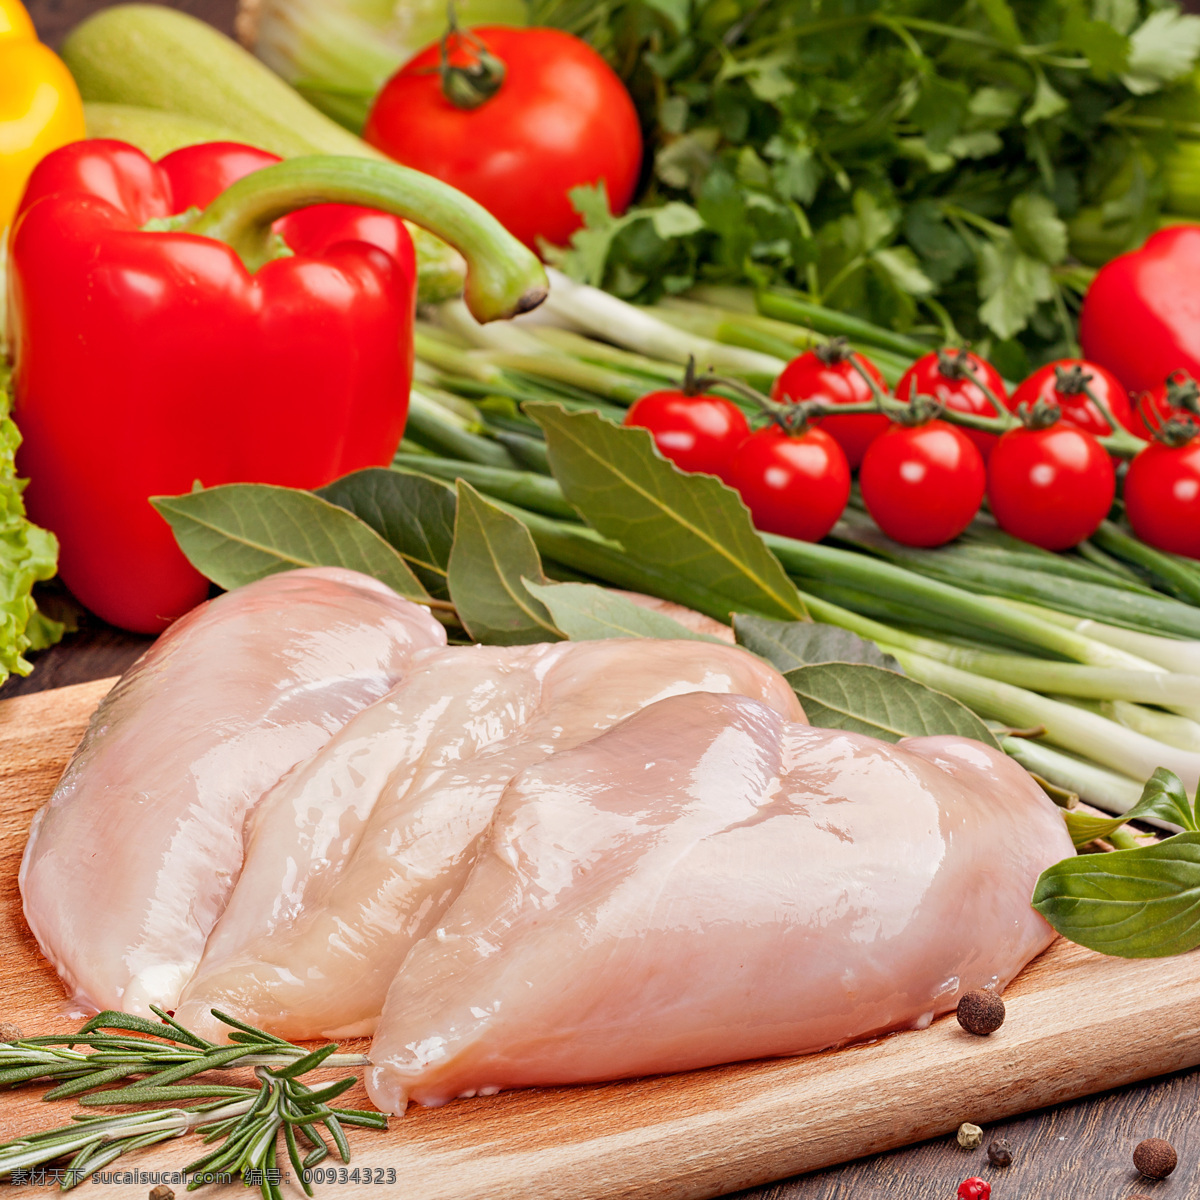 鸡肉与蔬菜 鸡肉 合理膳食 肉类食材 烤肉 新鲜蔬菜 新鲜 食材原料 餐饮美食 食物原料